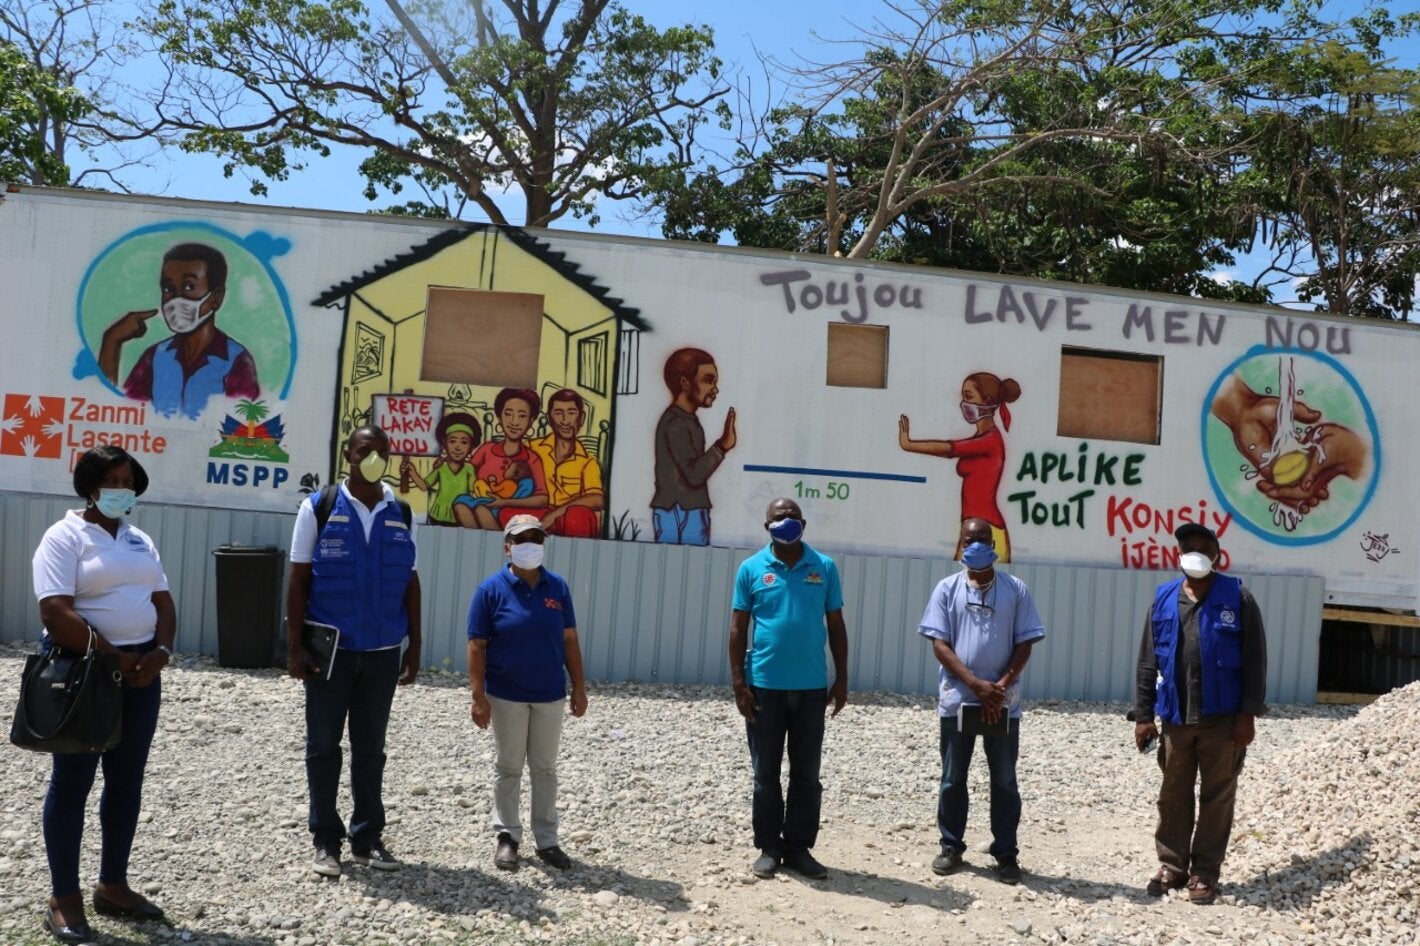 Mise en place d’un protocole par la DELR/MSPP pour renforcer la surveillance du COVID-19 dans les points frontaliers entre Haïti et la République dominicaine